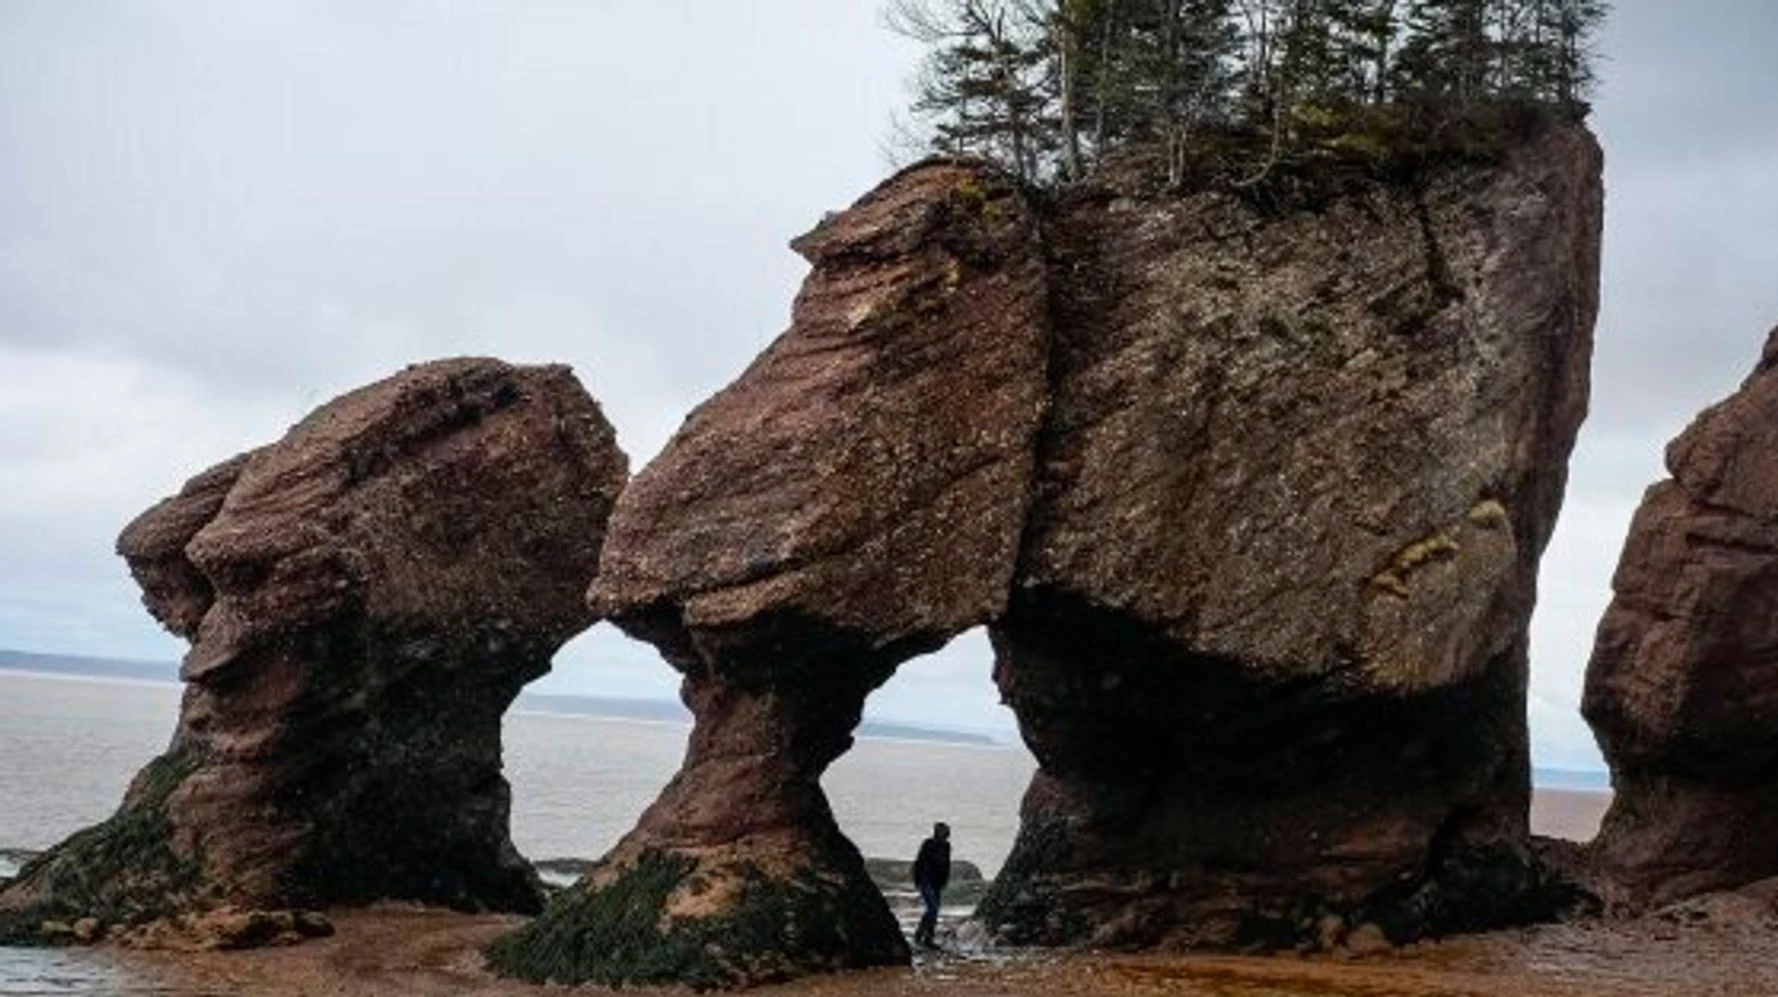 Tảng đá Voi (Canada): Tảng đá này từng rất nổi tiếng với du khách ghé thăm vịnh Fundy (Canada). Tuy nhiên, vào năm 2016, khoảng 200 tấn đá đã đổ xuống đất khiến nơi này mãi mãi không thể trở về hình dạng ban đầu. Theo Cottage Life, tảng đá này và lối đi ở giữa được hình thành nhờ thủy triều. Qua thời gian, nước thủy triều đã bào mòn tảng đá và tạo cho nơi này hình thù đặc biệt. Theo cơ quan chức năng, việc tảng đá này sụp đổ liên quan đến vấn đề xói mòn. Ảnh: Huffpost.